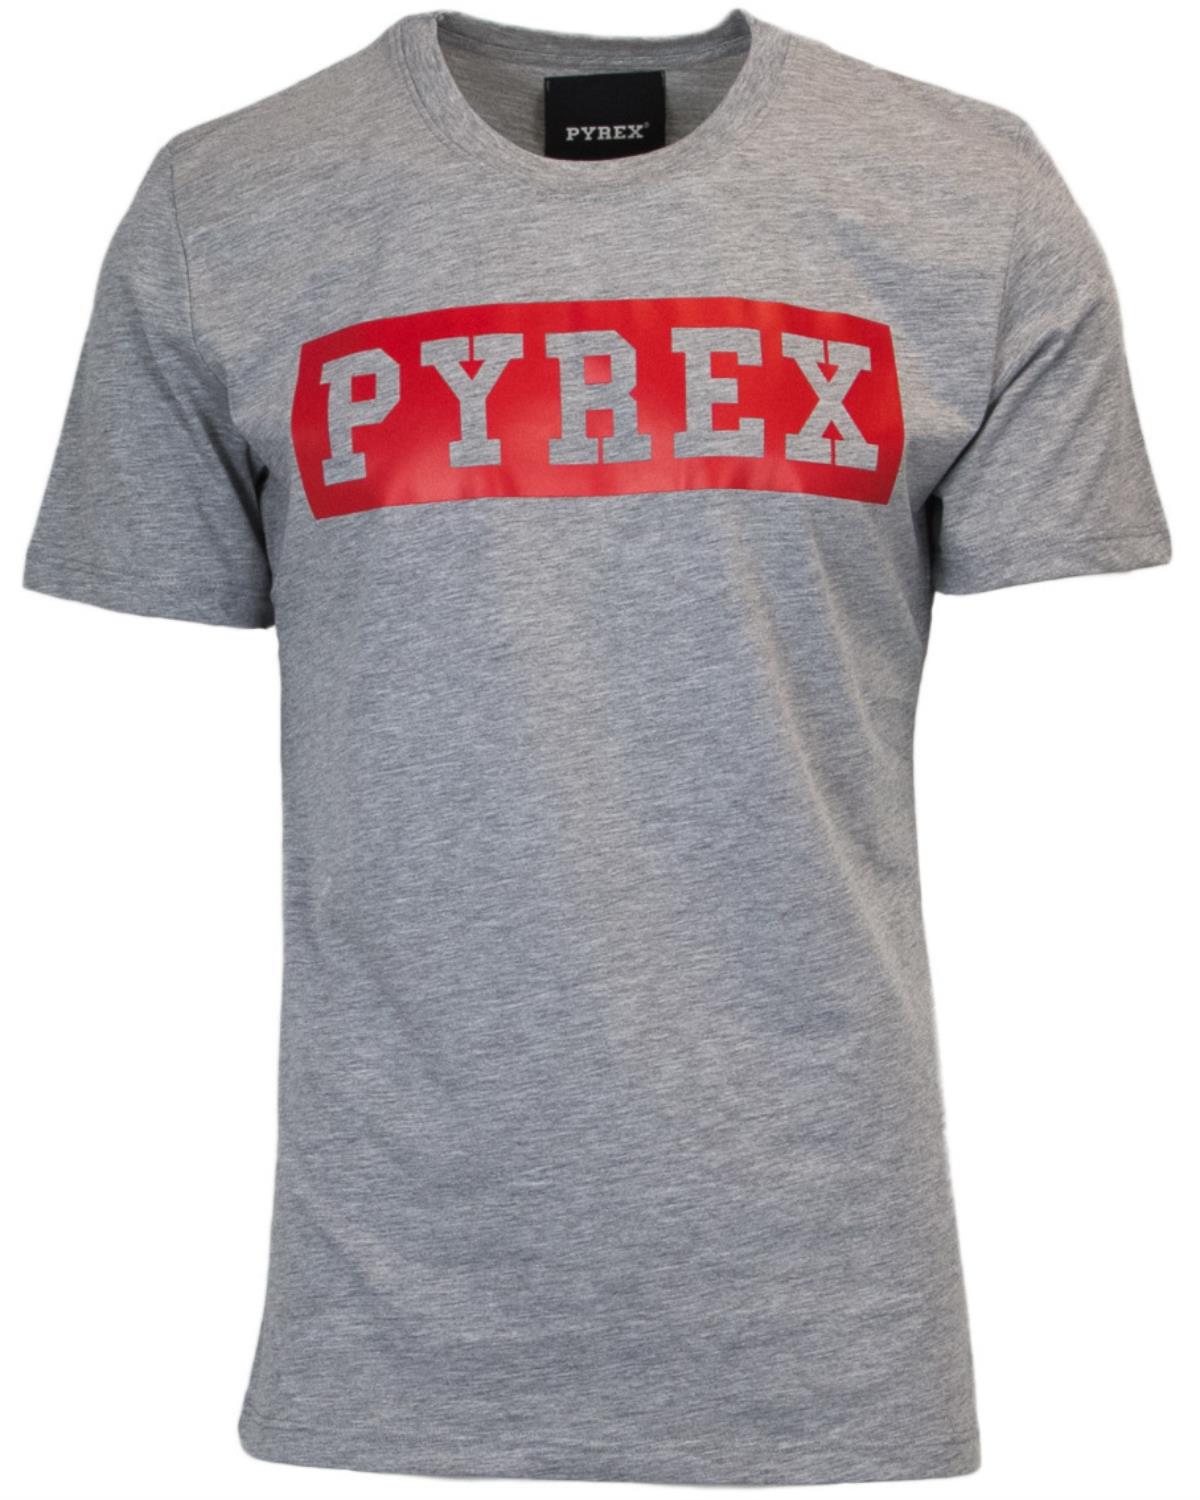 Pyrex T-shirt